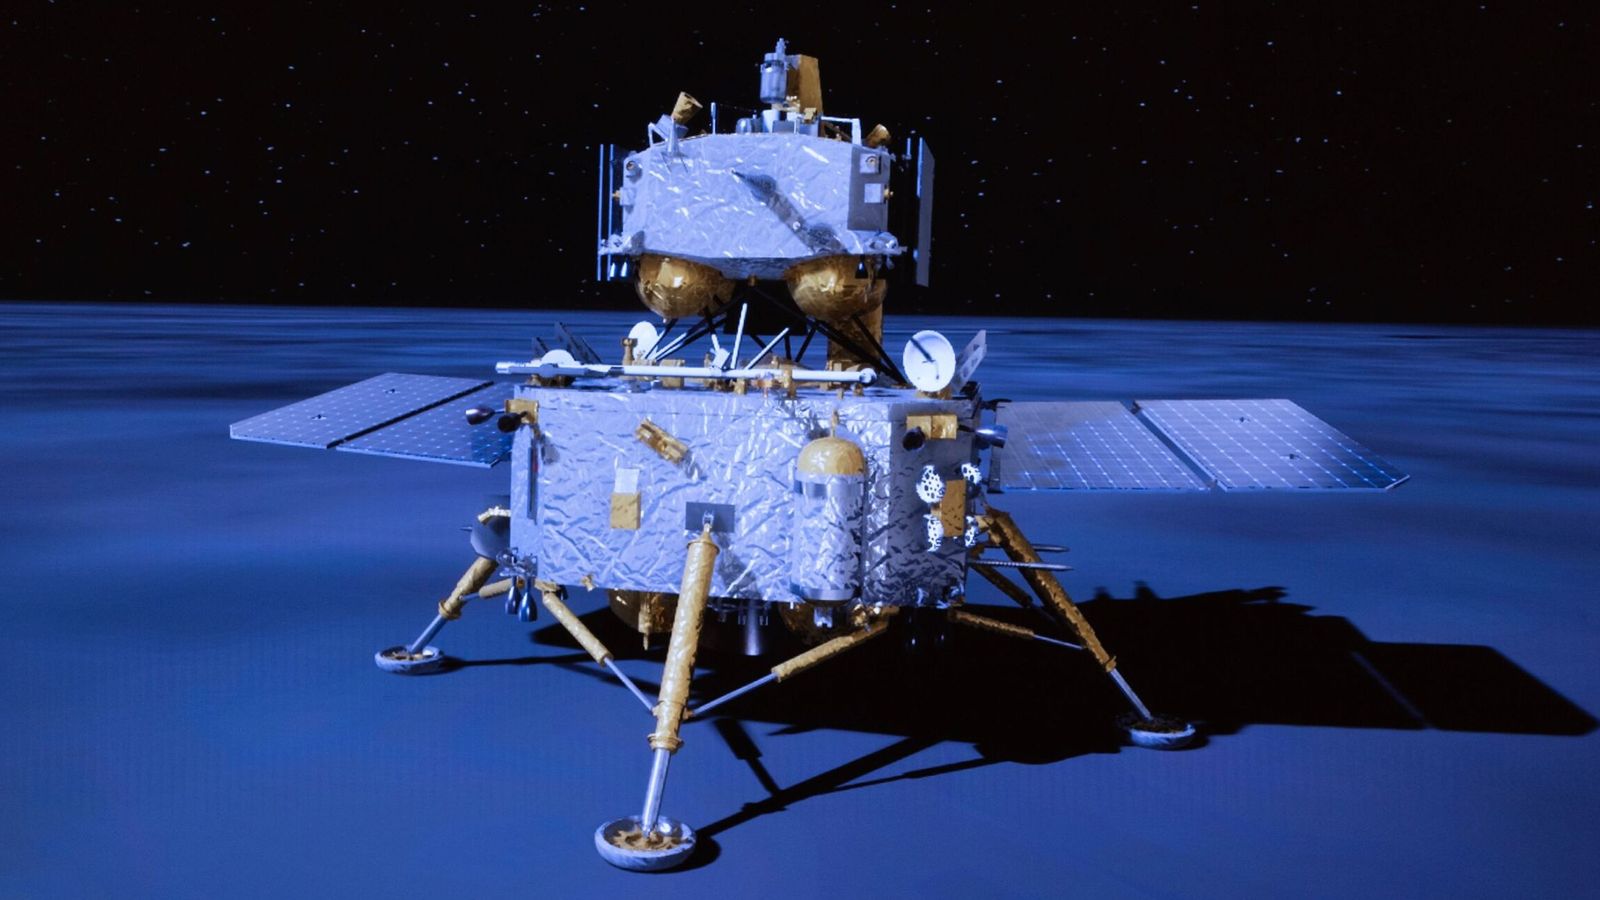 هبطت الصين المركبة الفضائية “تشانغ آه-6” على الجانب البعيد من القمر لحمل عينات لأول مرة  أخبار العلوم والتكنولوجيا